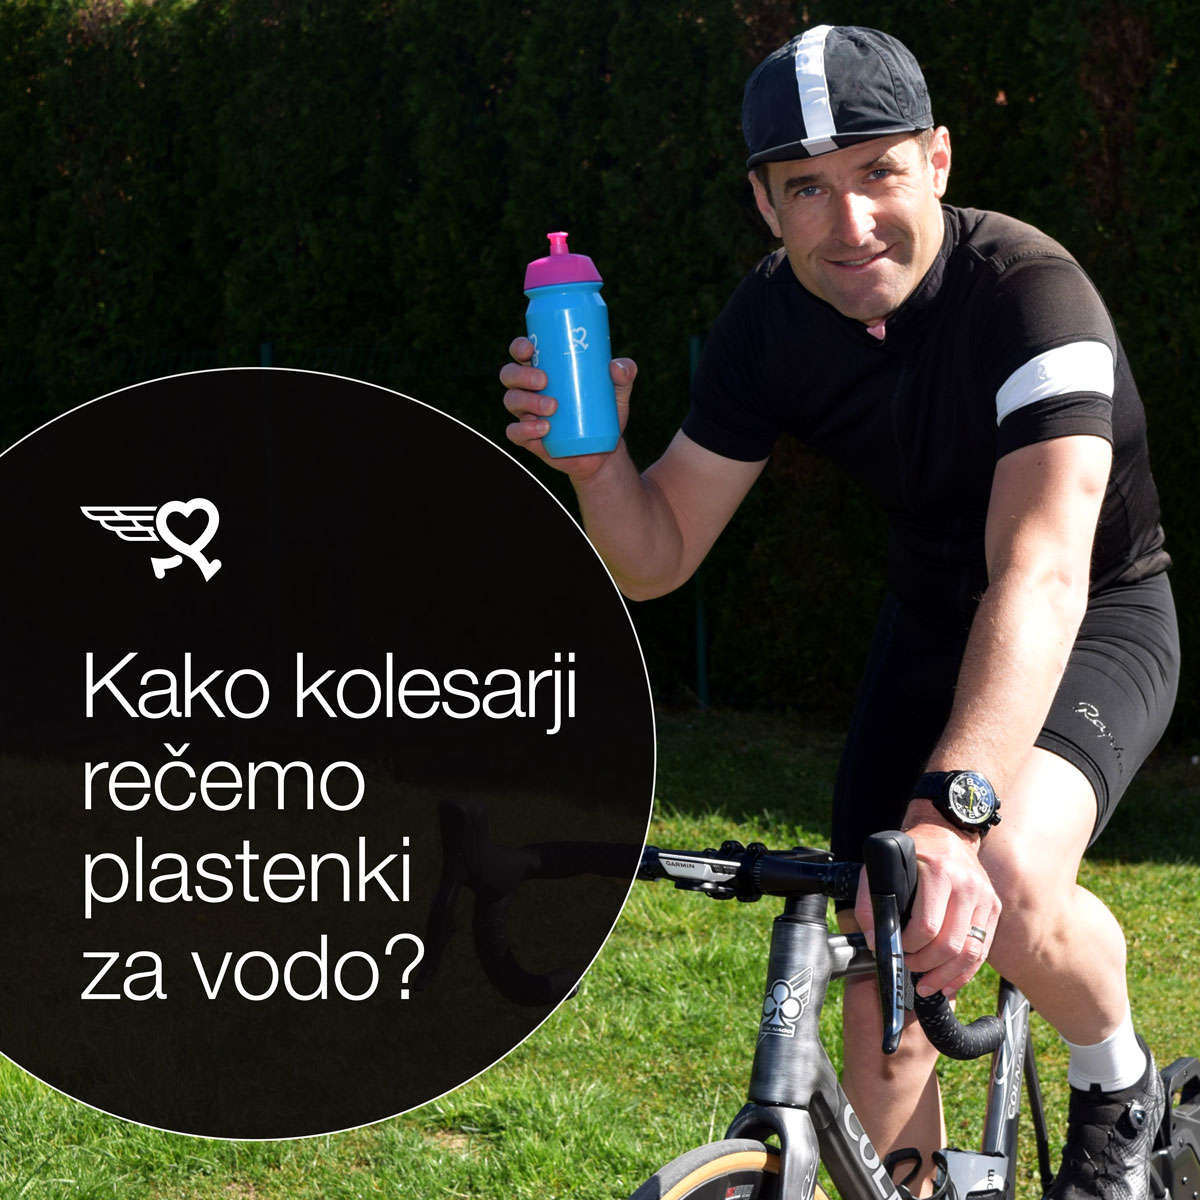 Pridružite se Migimigi kolesarskemu izzivu, zabavno in poučno bo!